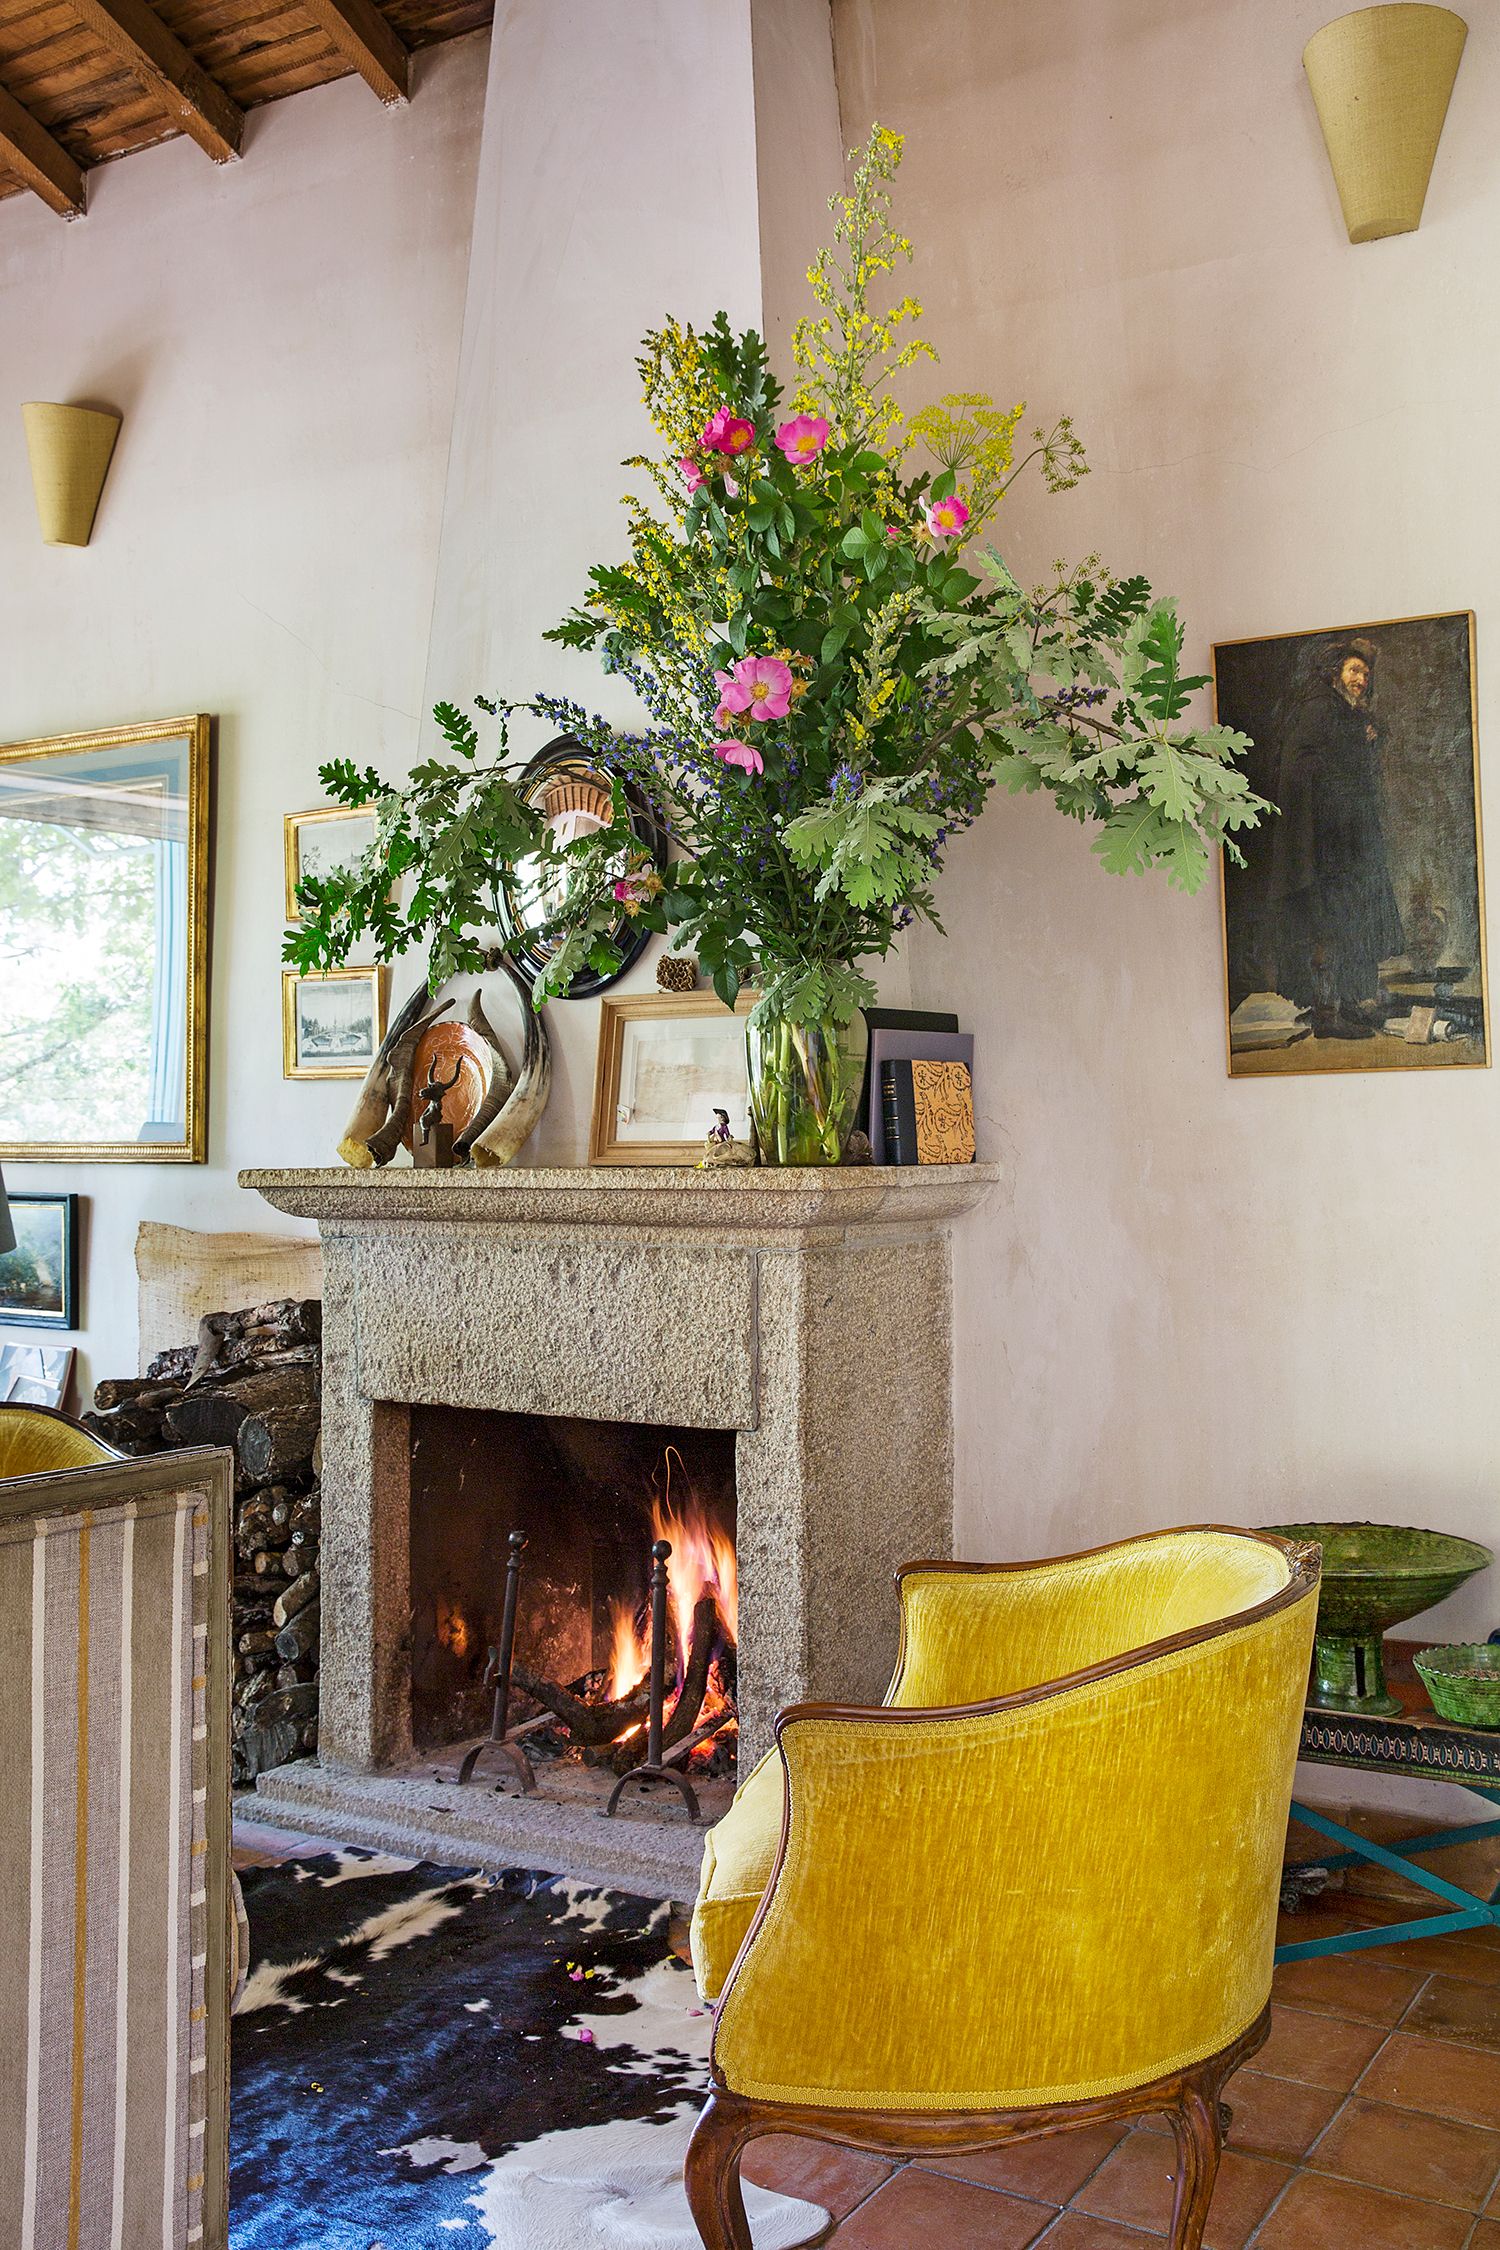 Decoración floral interior del hogar a partir de flores secas